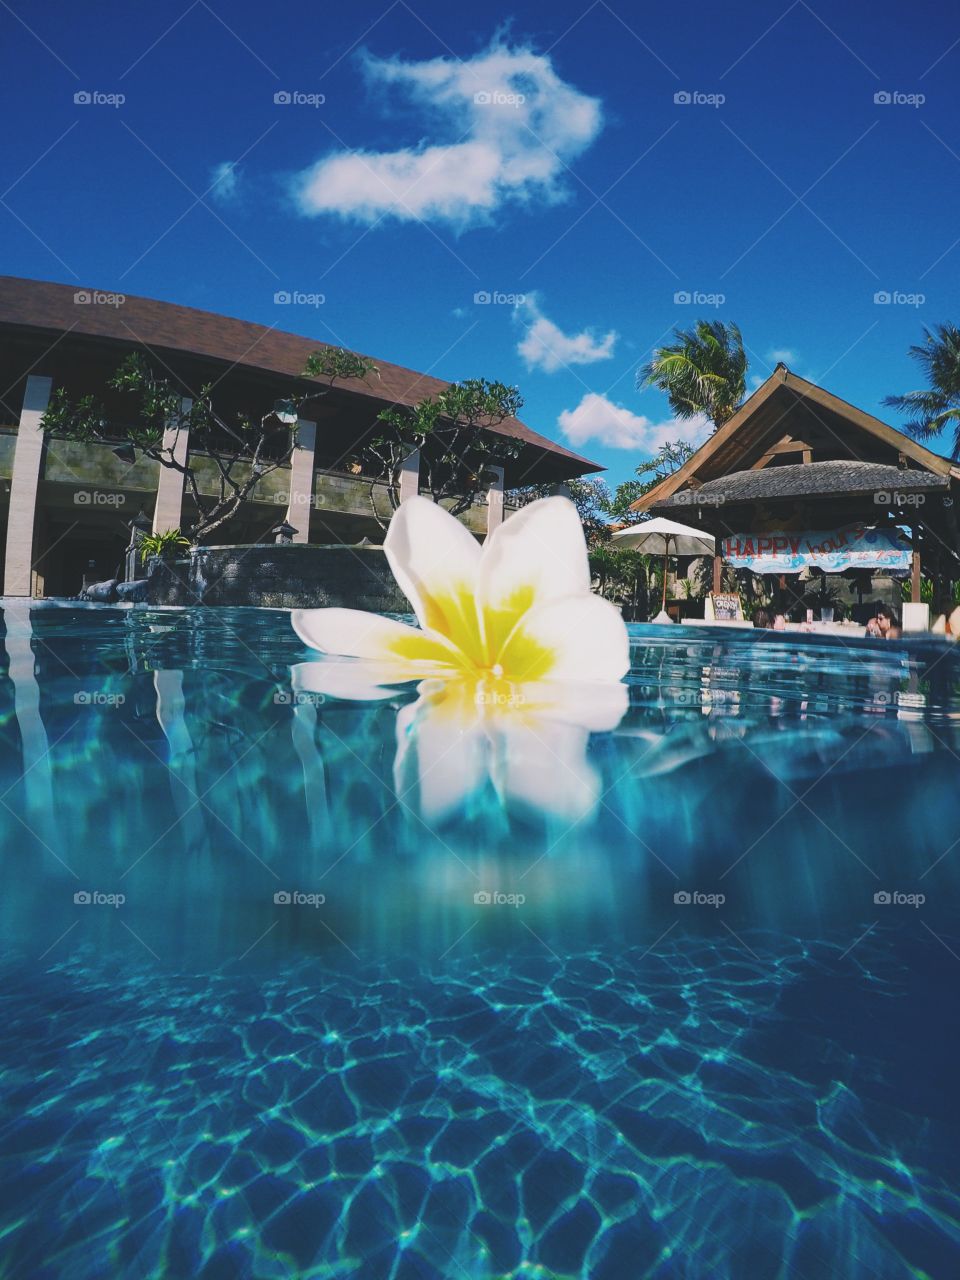 Bali flower. Poolside in Bali